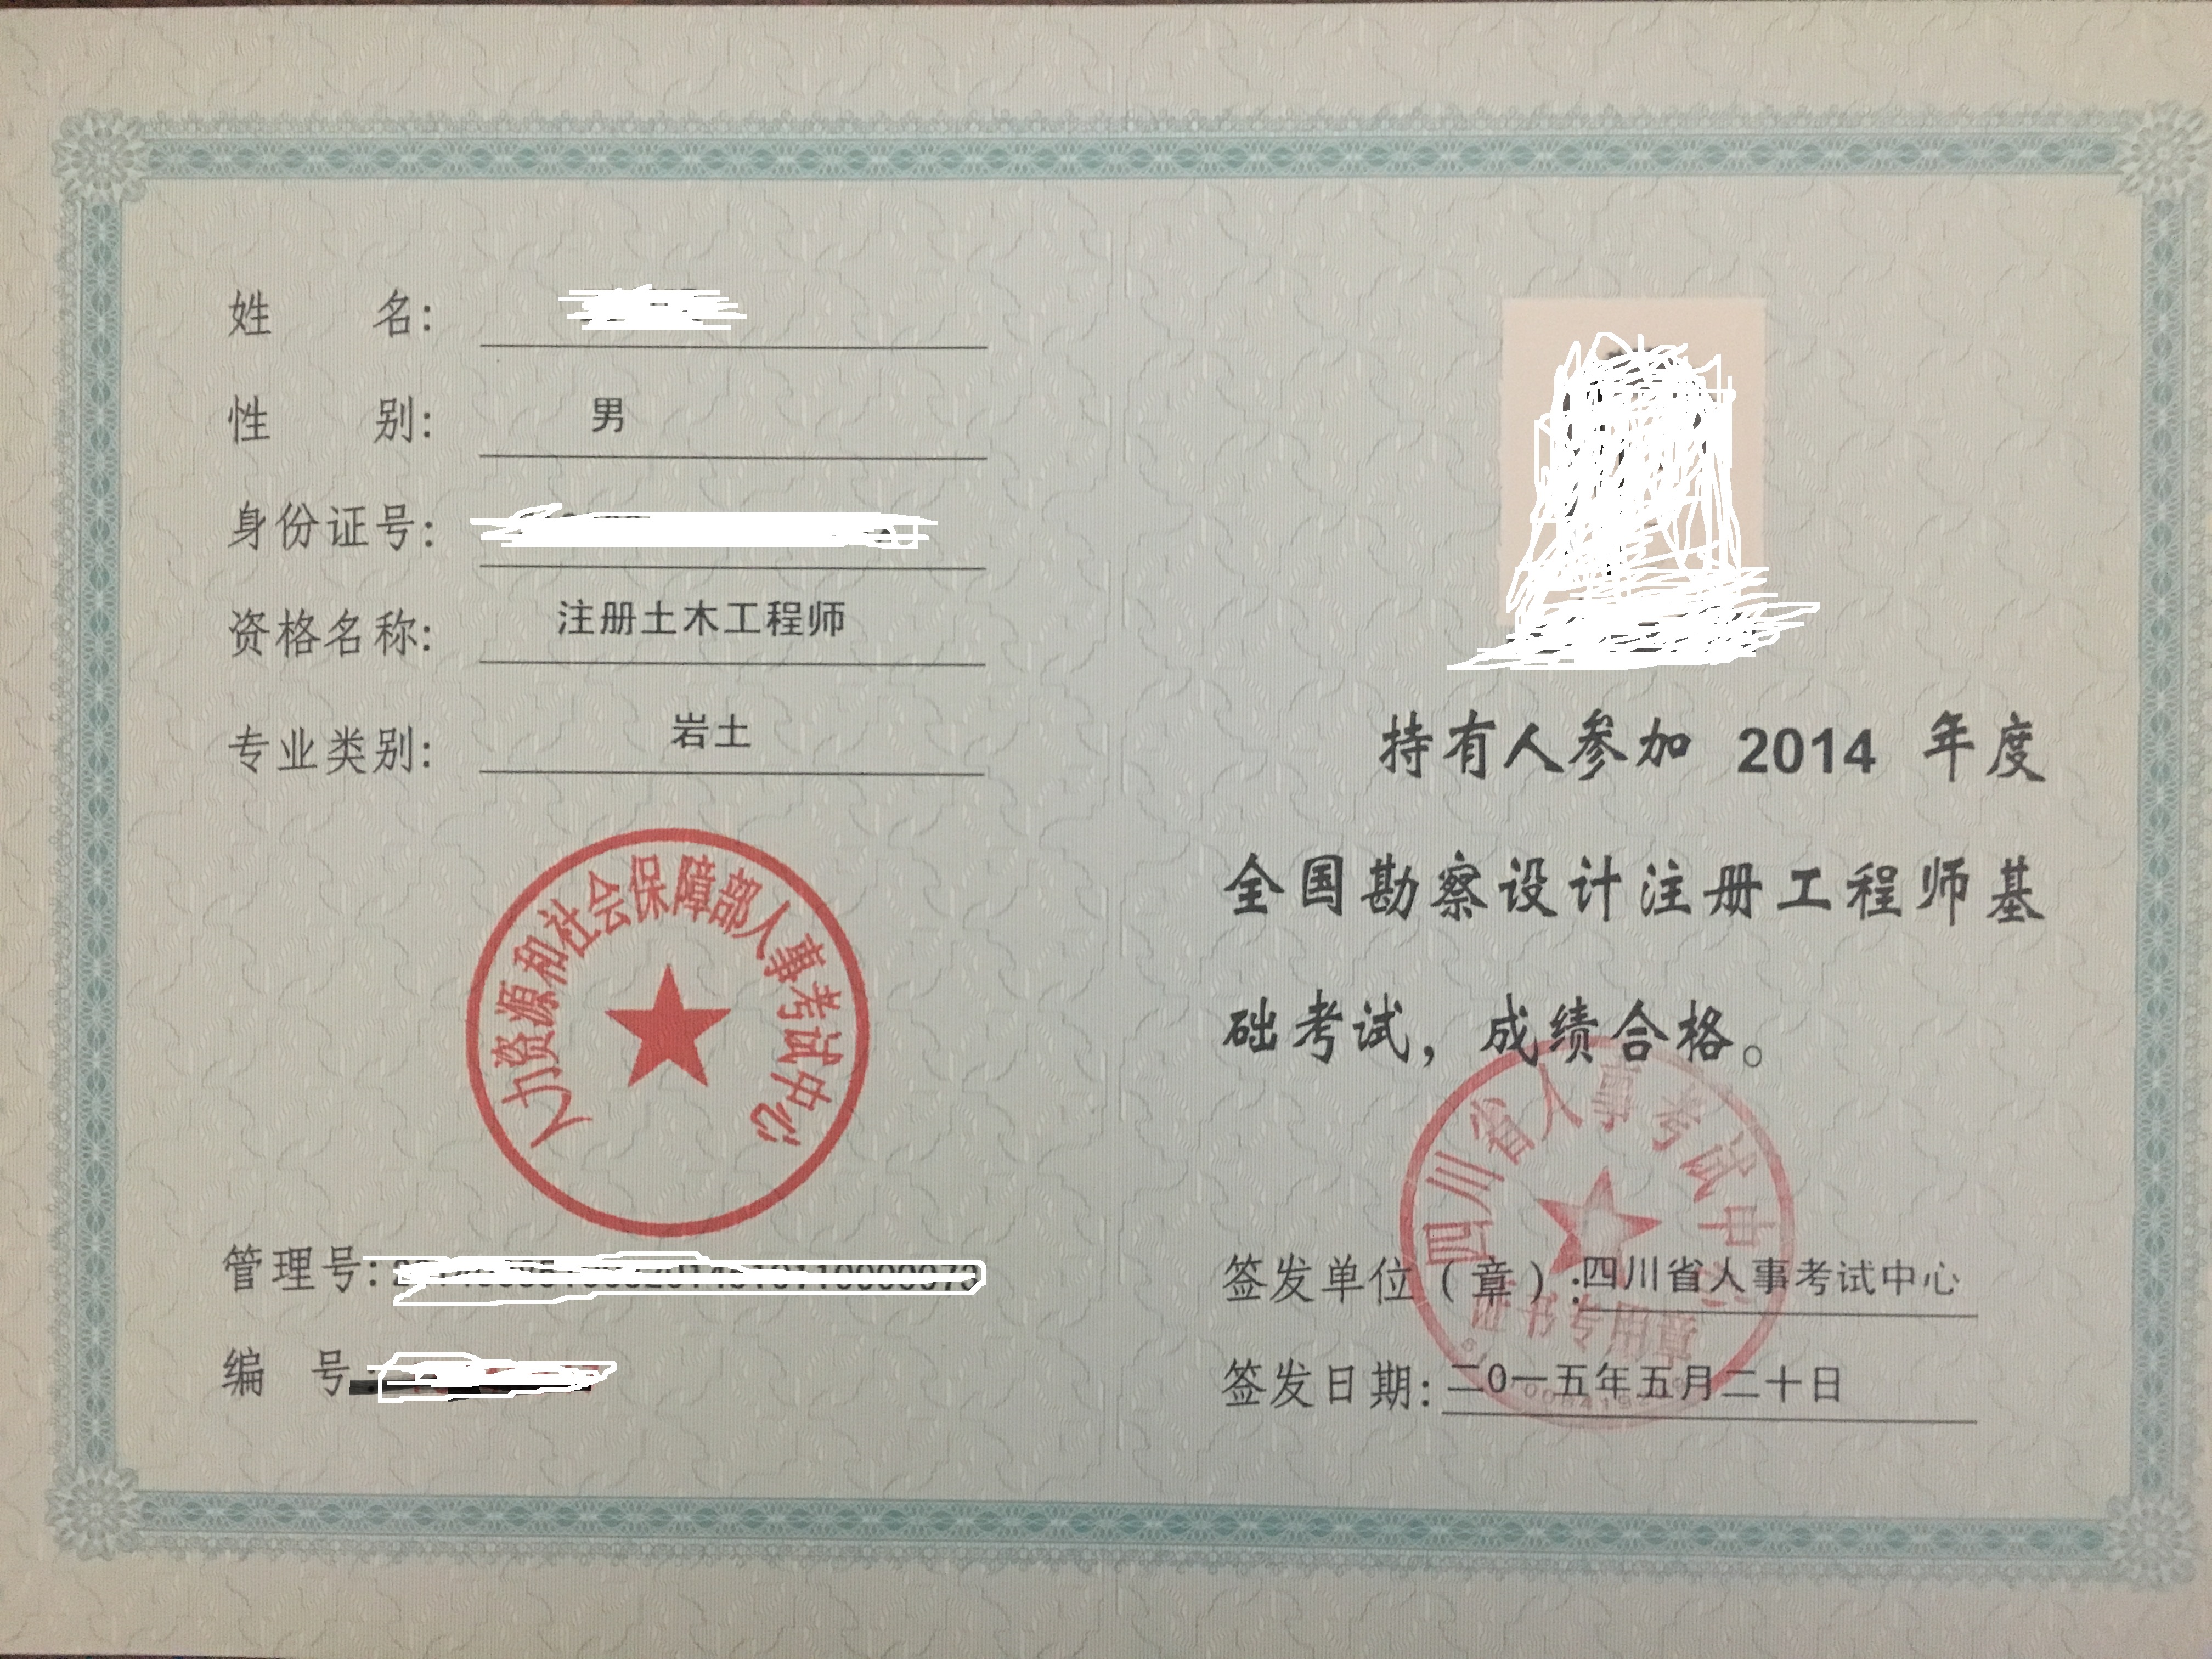 中国五冶注册岩土工程师中国五冶注册岩土工程师考试时间  第1张